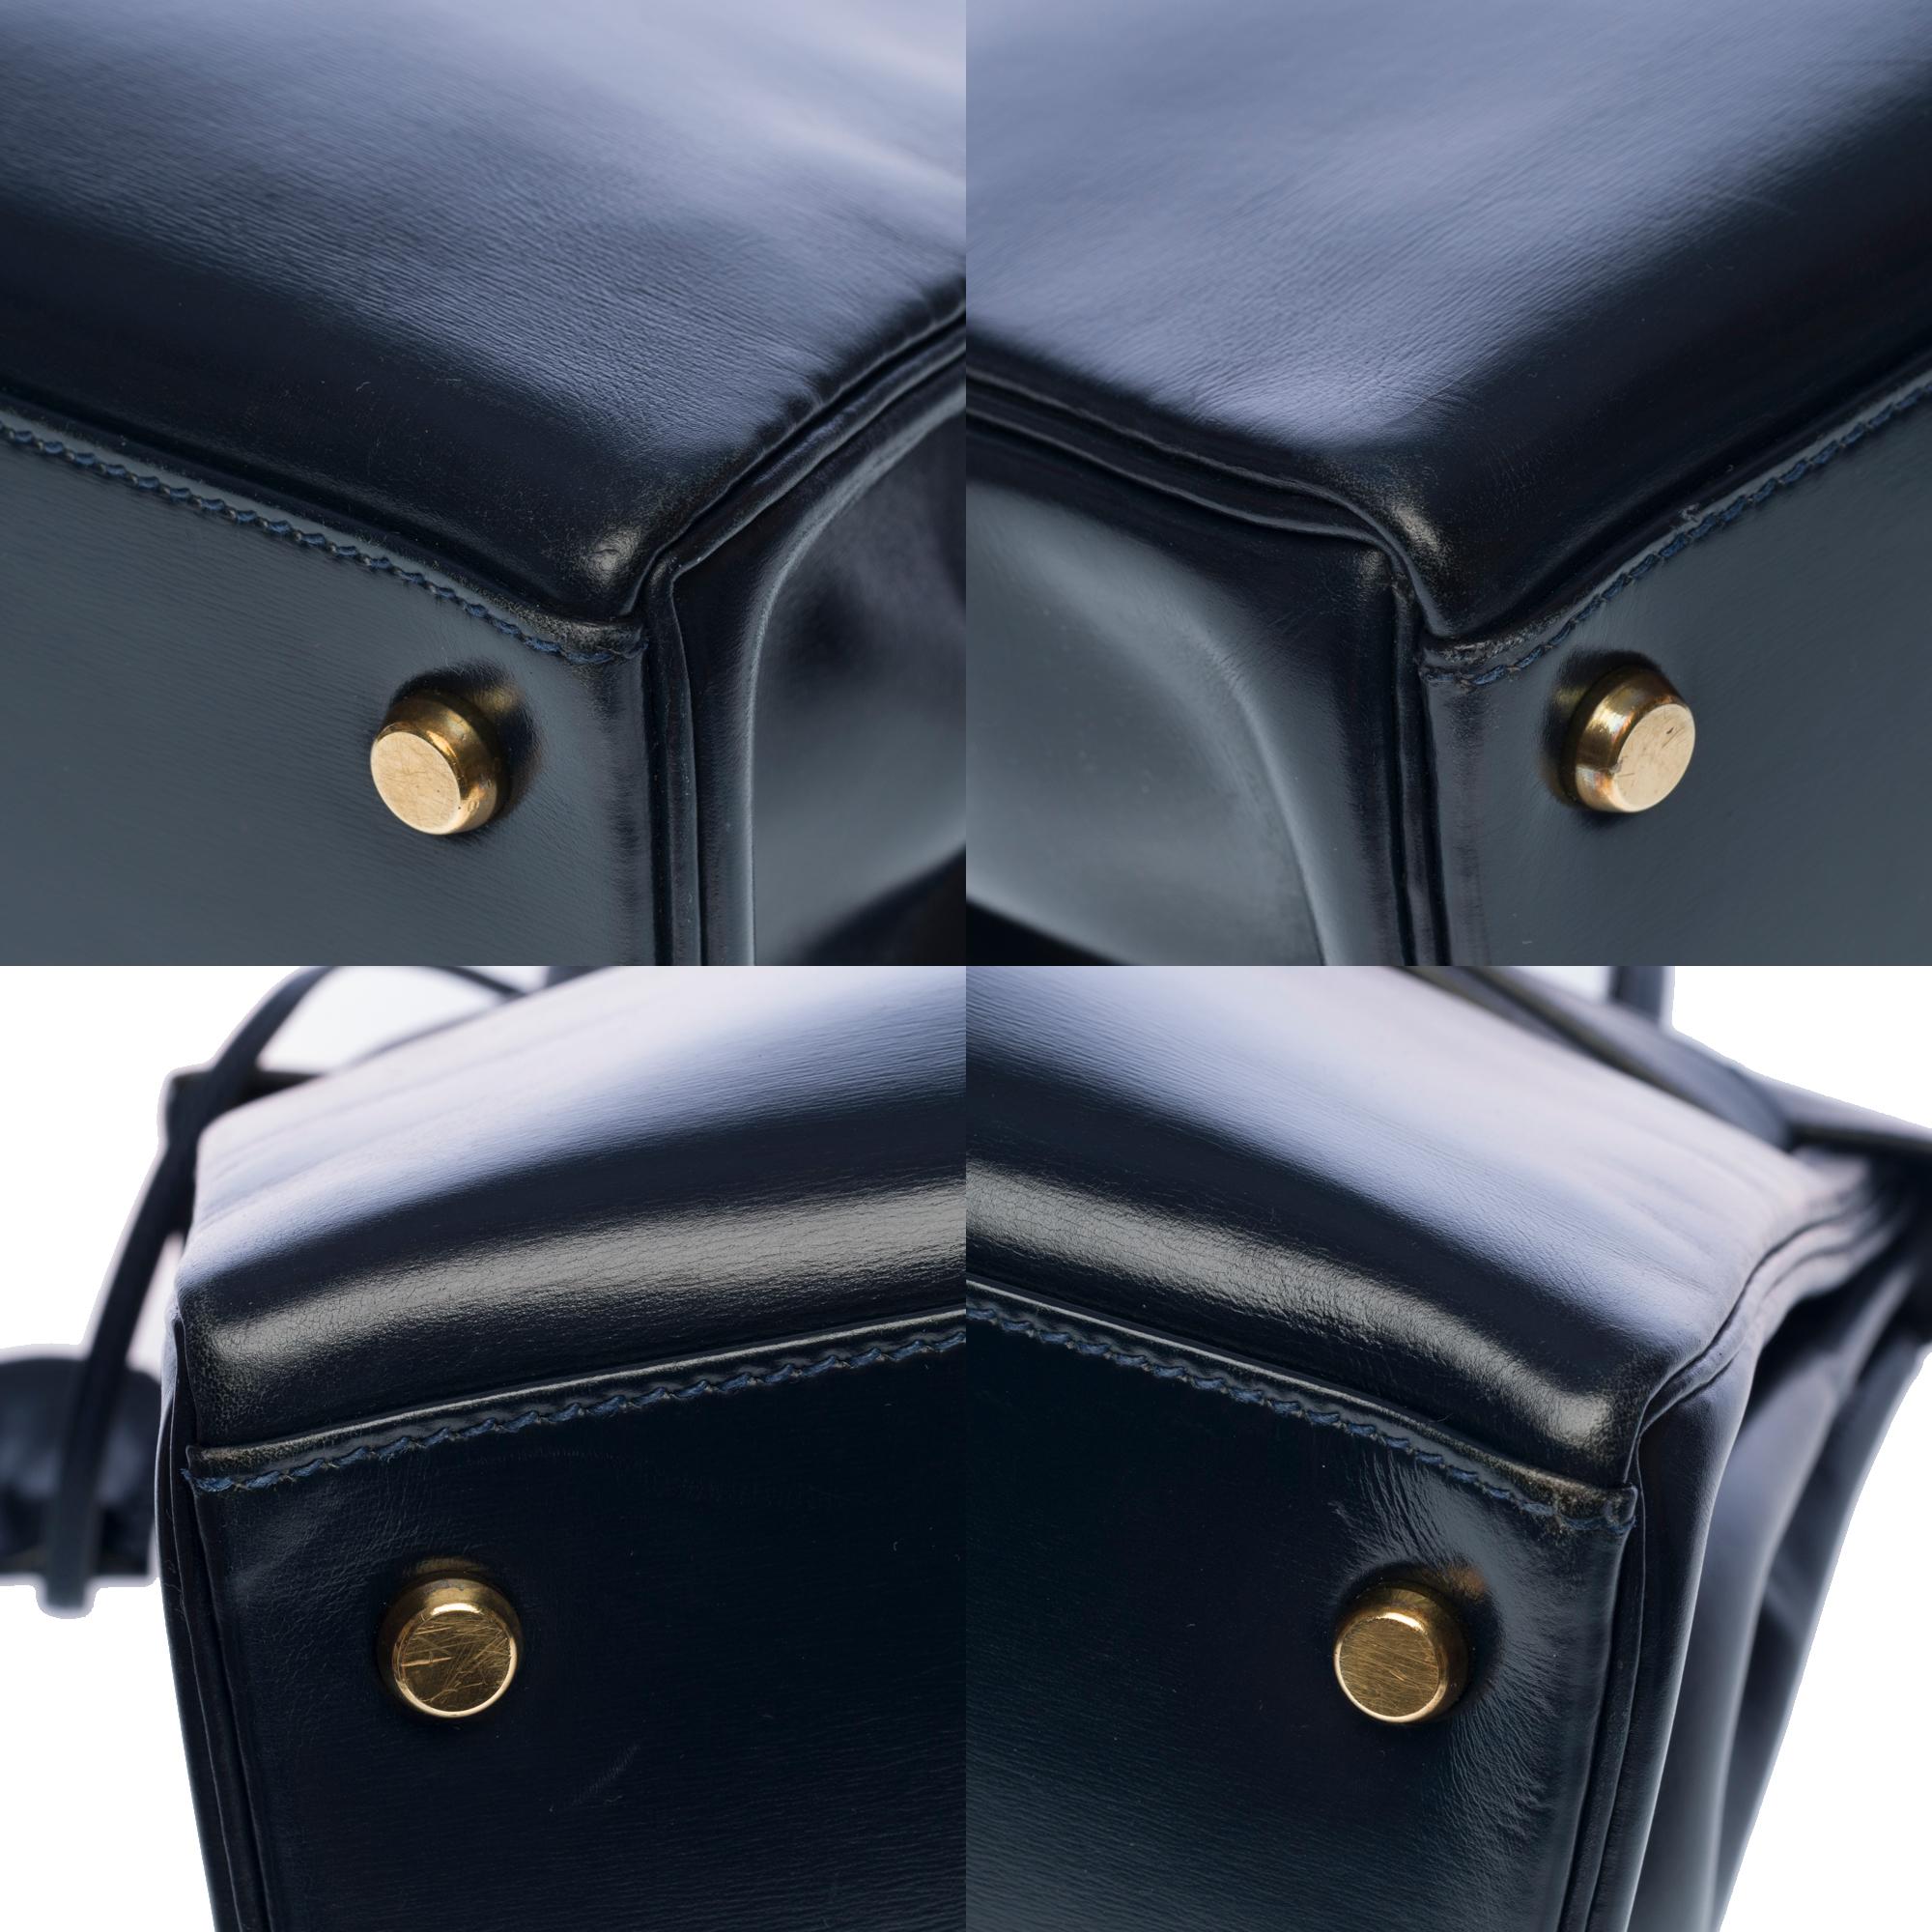 Rare Hermes Kelly 28 retourne handbag double strap in Navy blue box calfskin, GHW 3